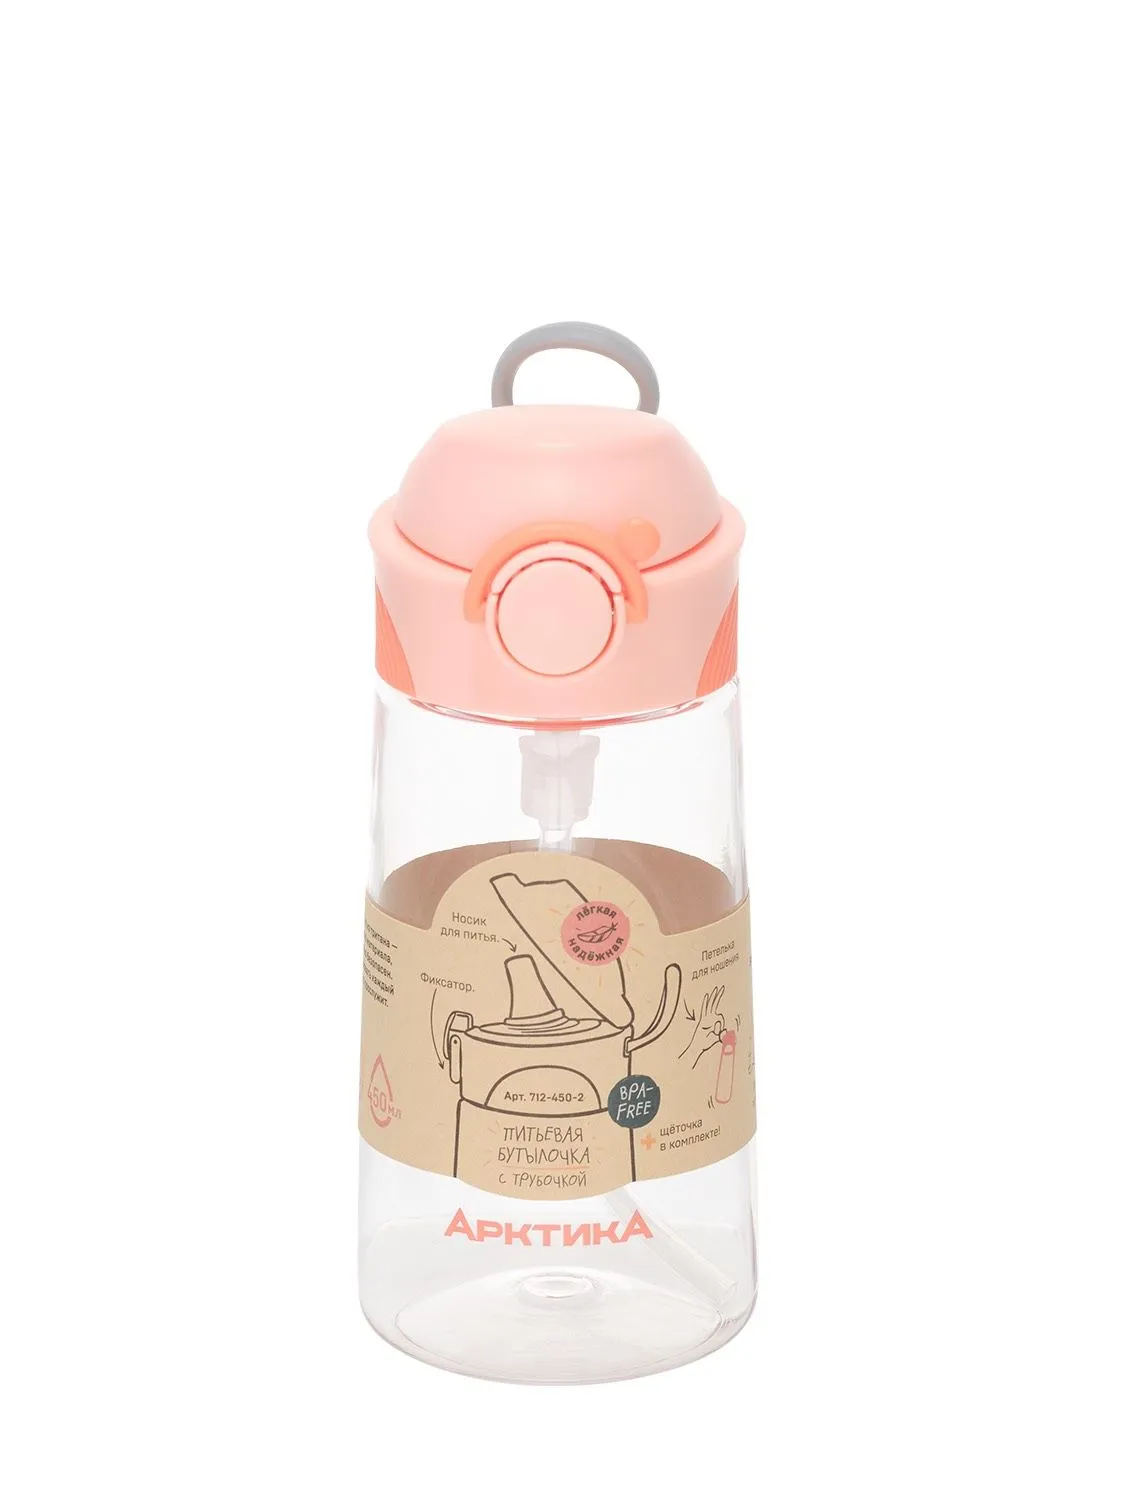 Бутылочка детская питьевая, бытовая, тритановая (для напитков), тм "Арктика", 450 мл, арт. 712-450 персик